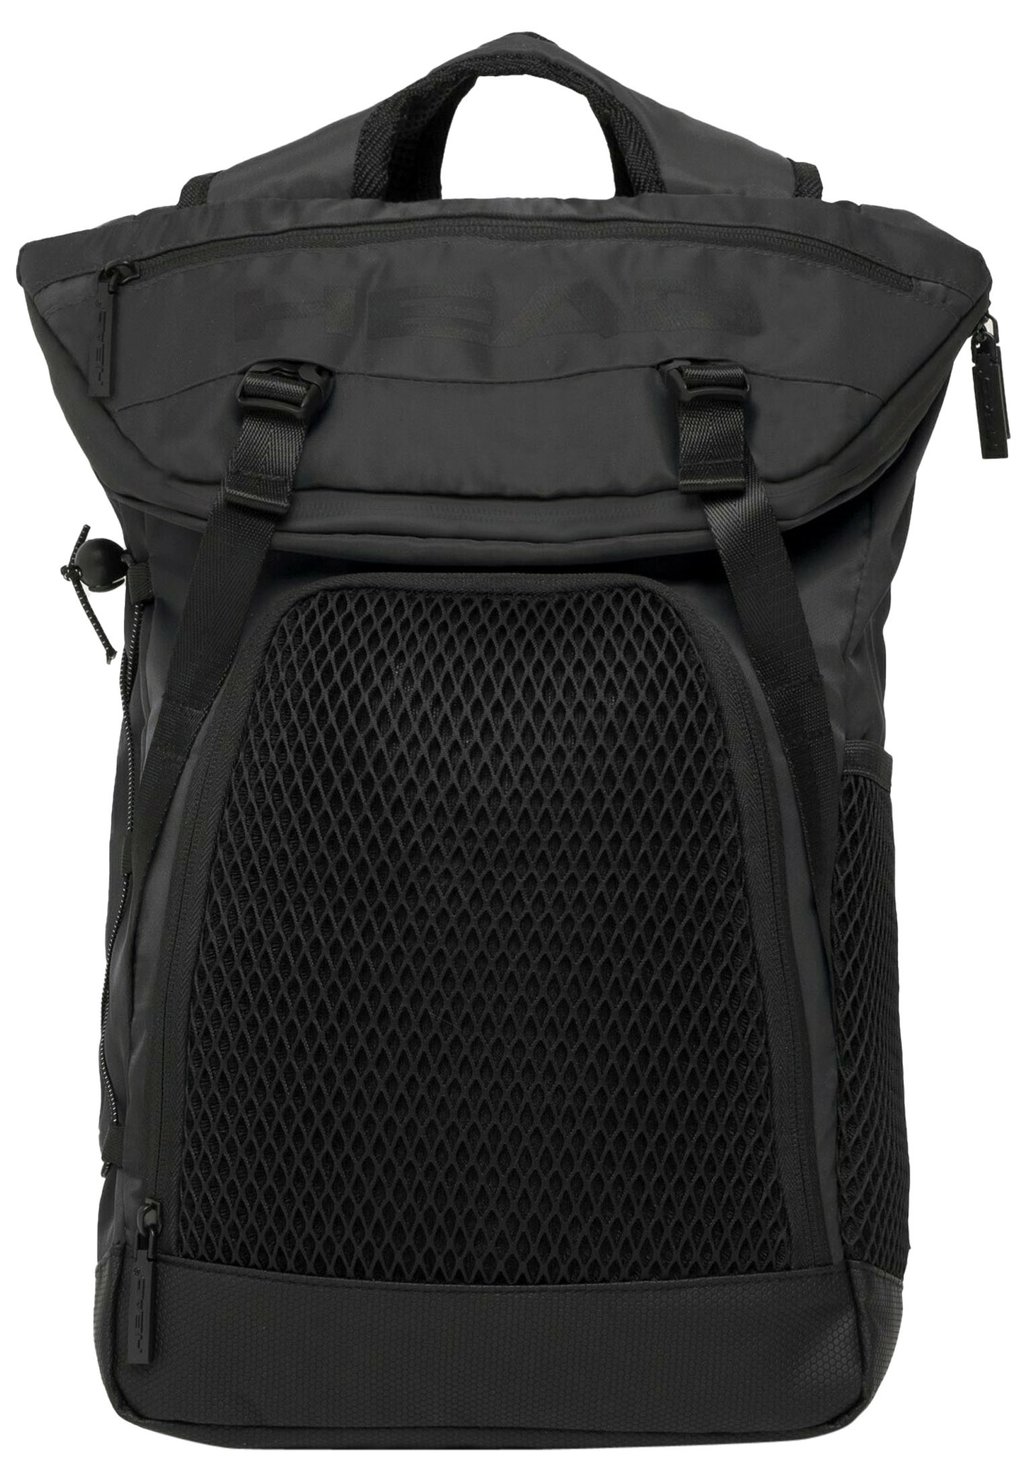 Рюкзак для путешествий Head Net Vertical, чёрный рюкзак для путешествий head net vertical темно синий